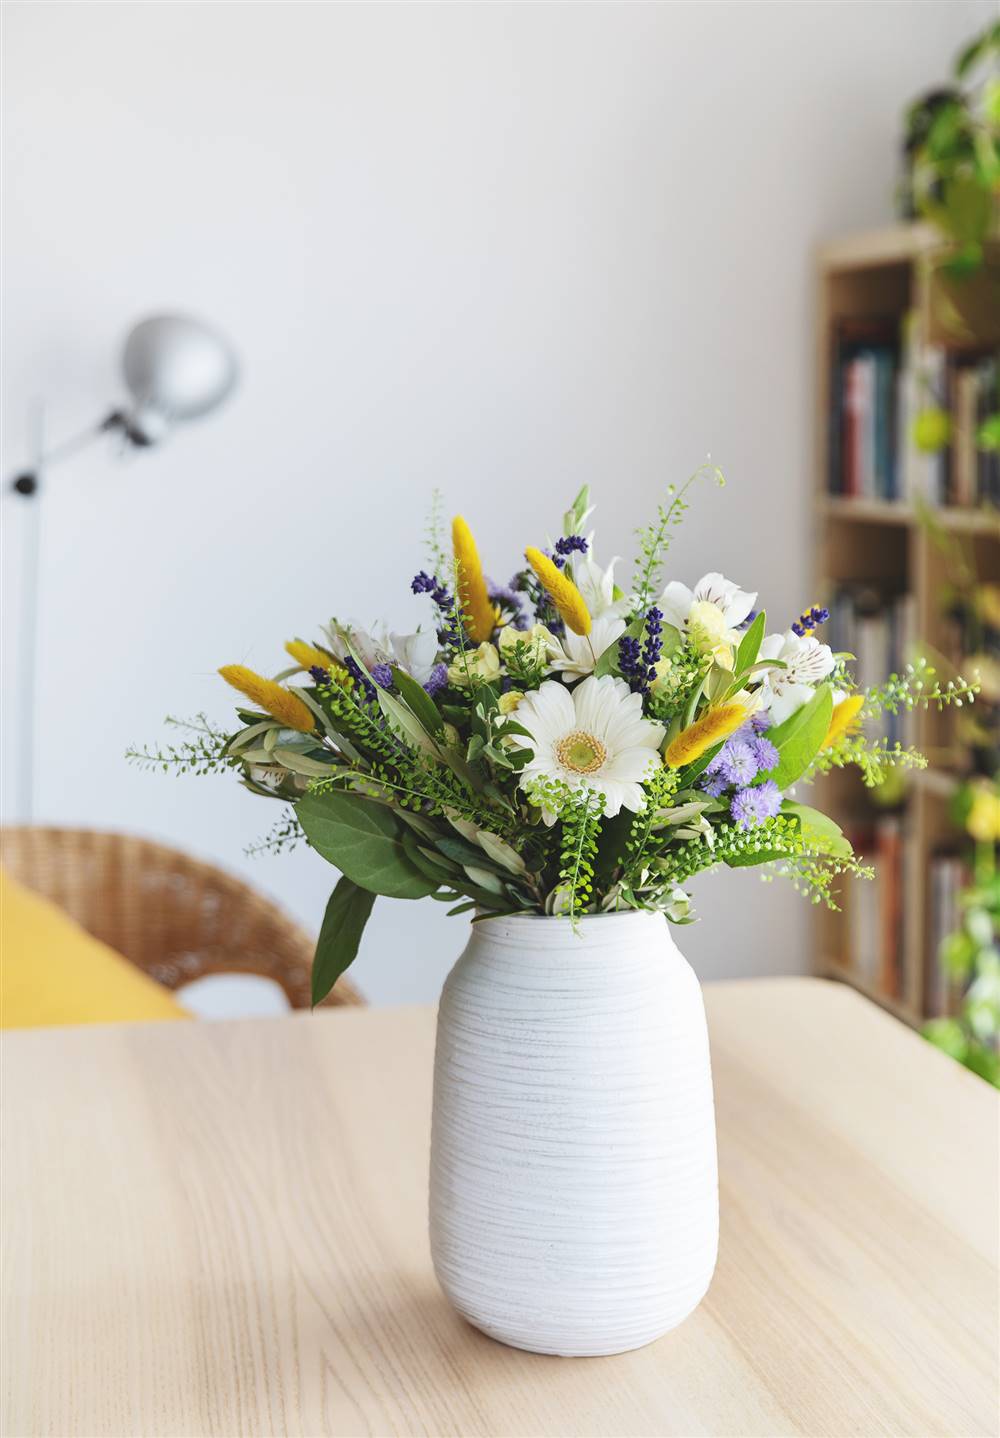 Jarrón cilíndrico de cerámica blanca con ramo de flores blancas, amarillas y violetas